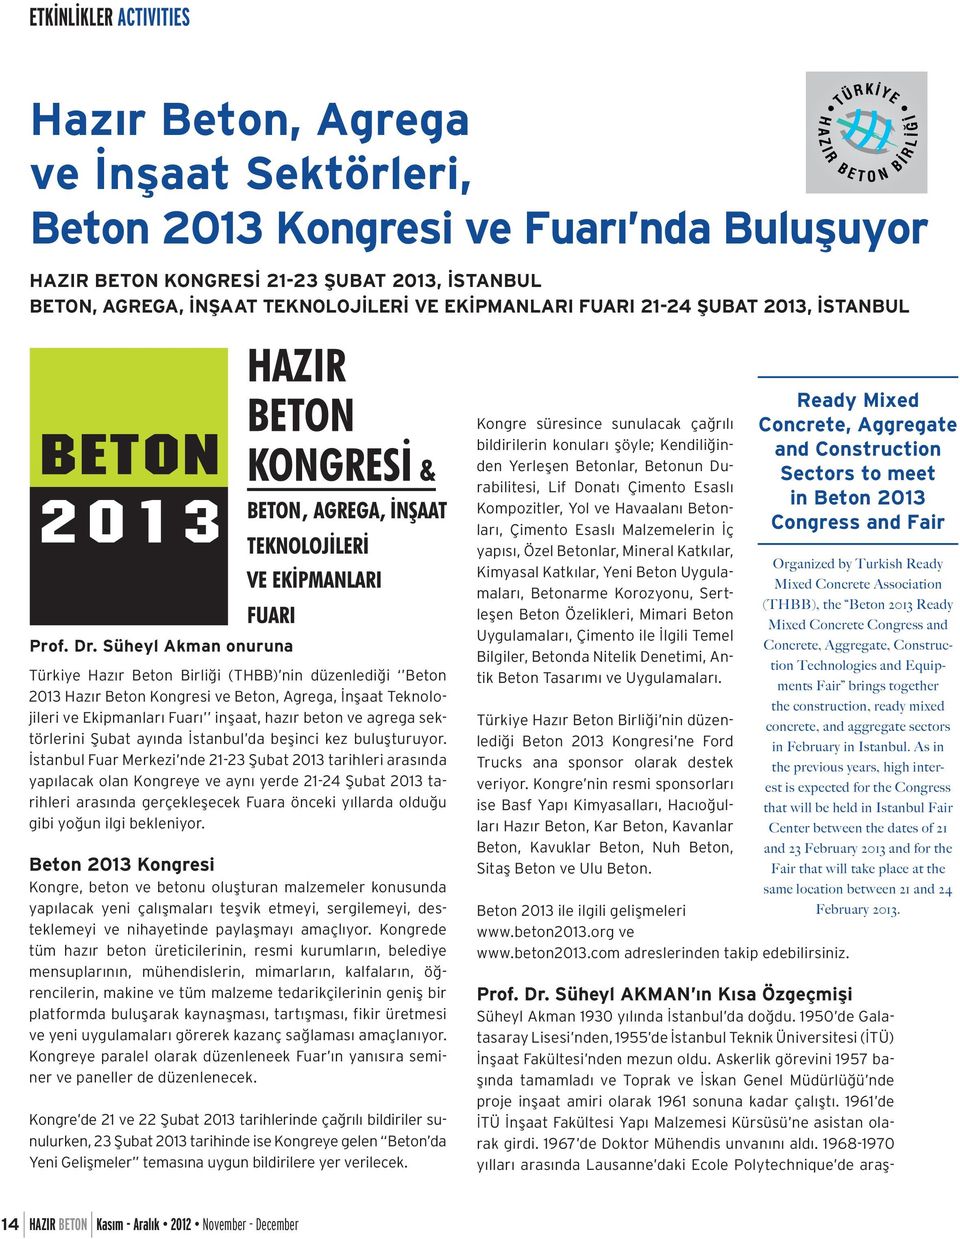 Süheyl Akman onuruna Türkiye Hazır Beton Birliği (THBB) nin düzenlediği Beton 2013 Hazır Beton Kongresi ve Beton, Agrega, İnşaat Teknolojileri ve Ekipmanları Fuarı inşaat, hazır beton ve agrega